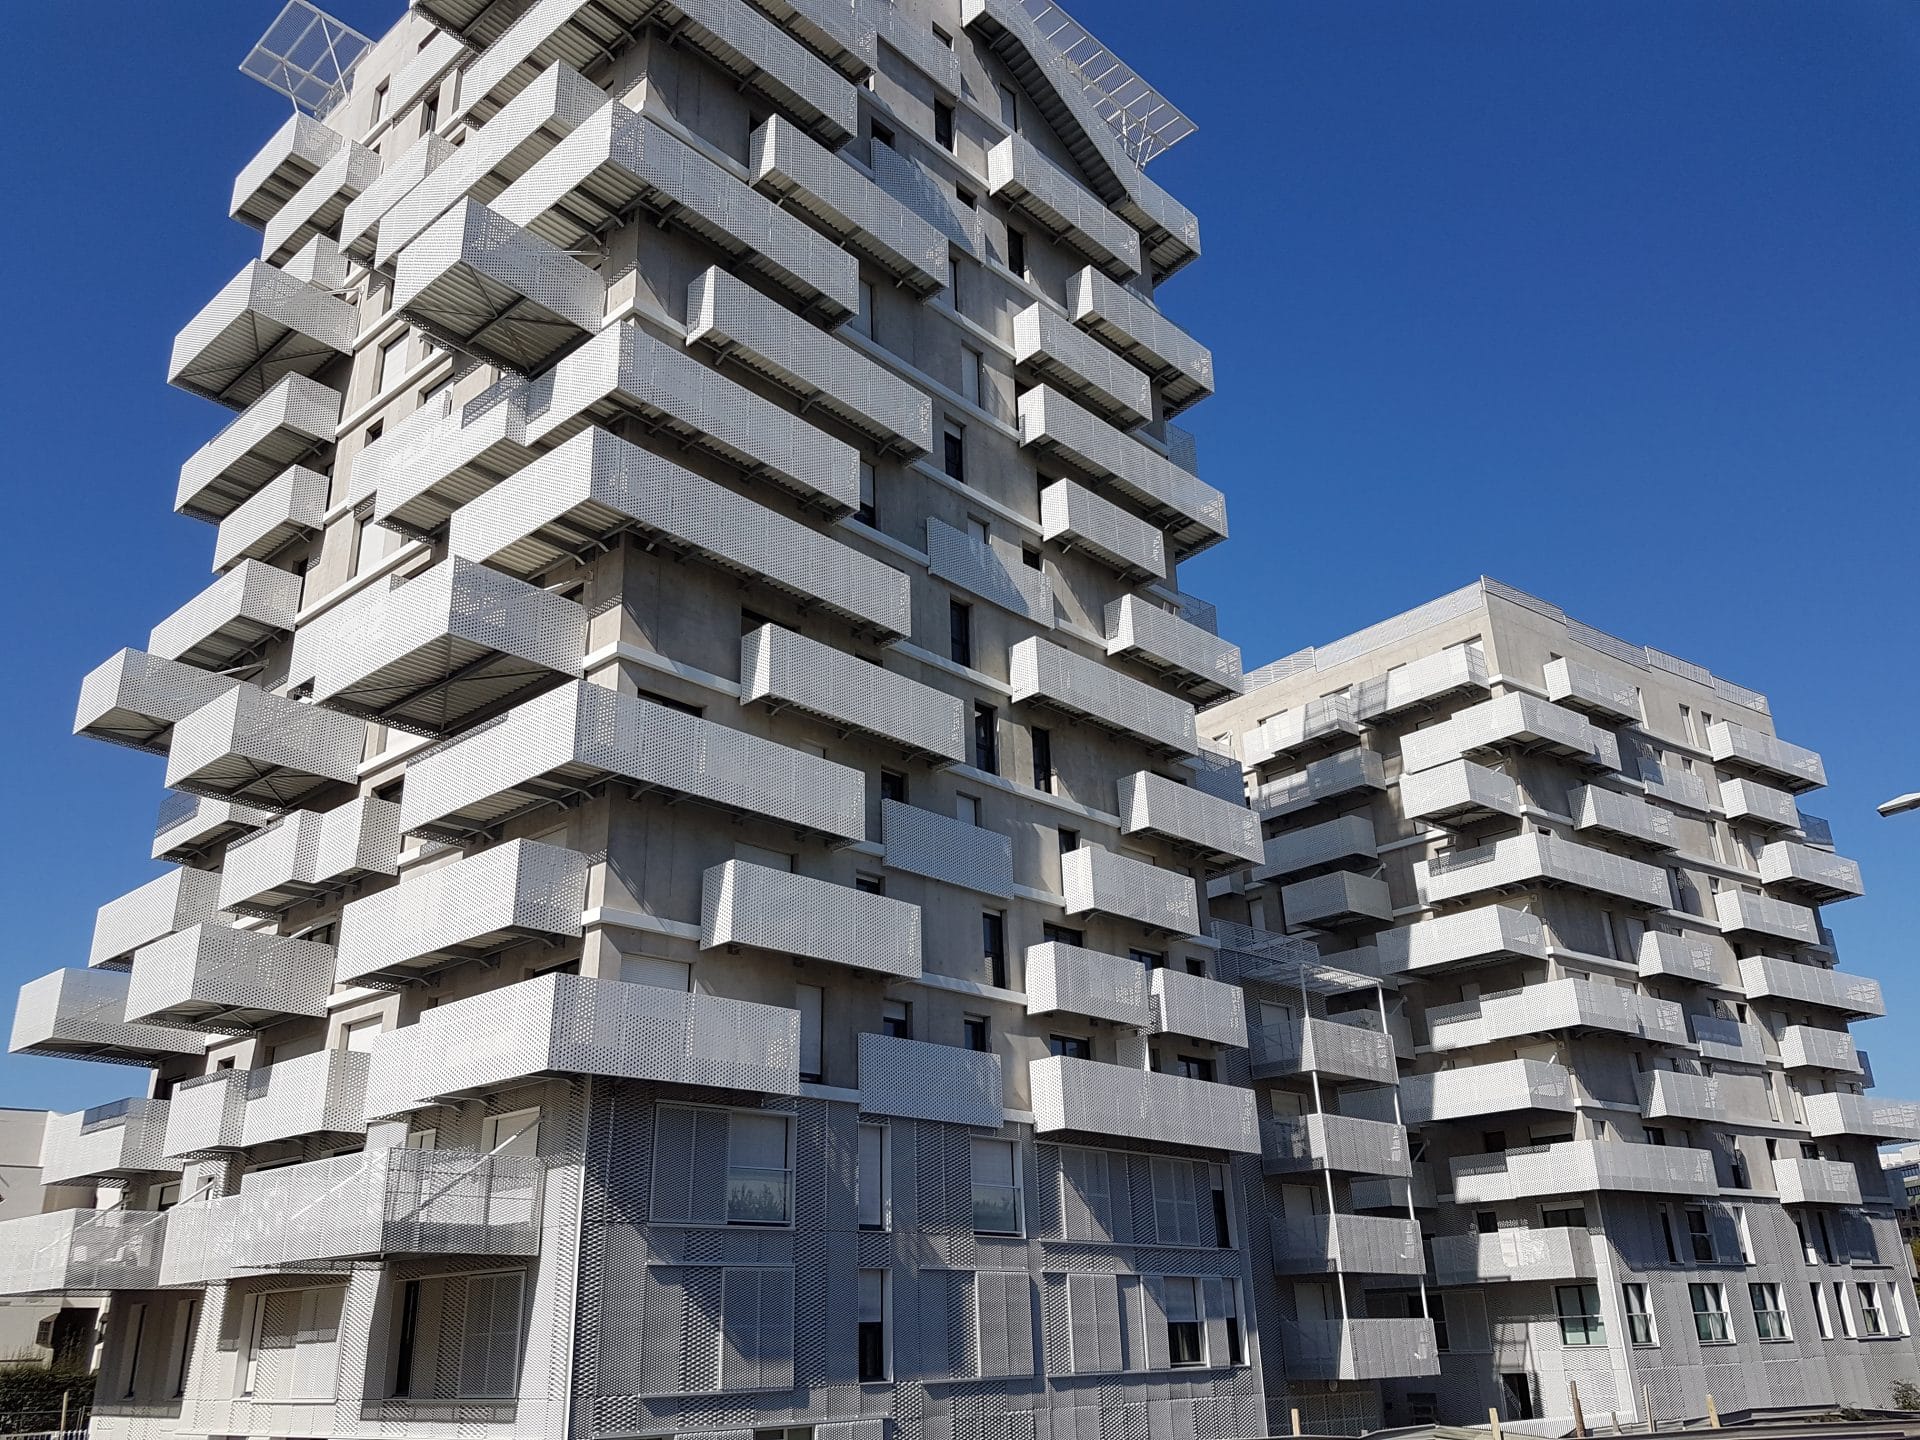 Chantier programme Altana Nanterre, 154 balcons métal rapportés sur façade béton neuve avec bac collaborant laqué. Pose jusqu’au R+15